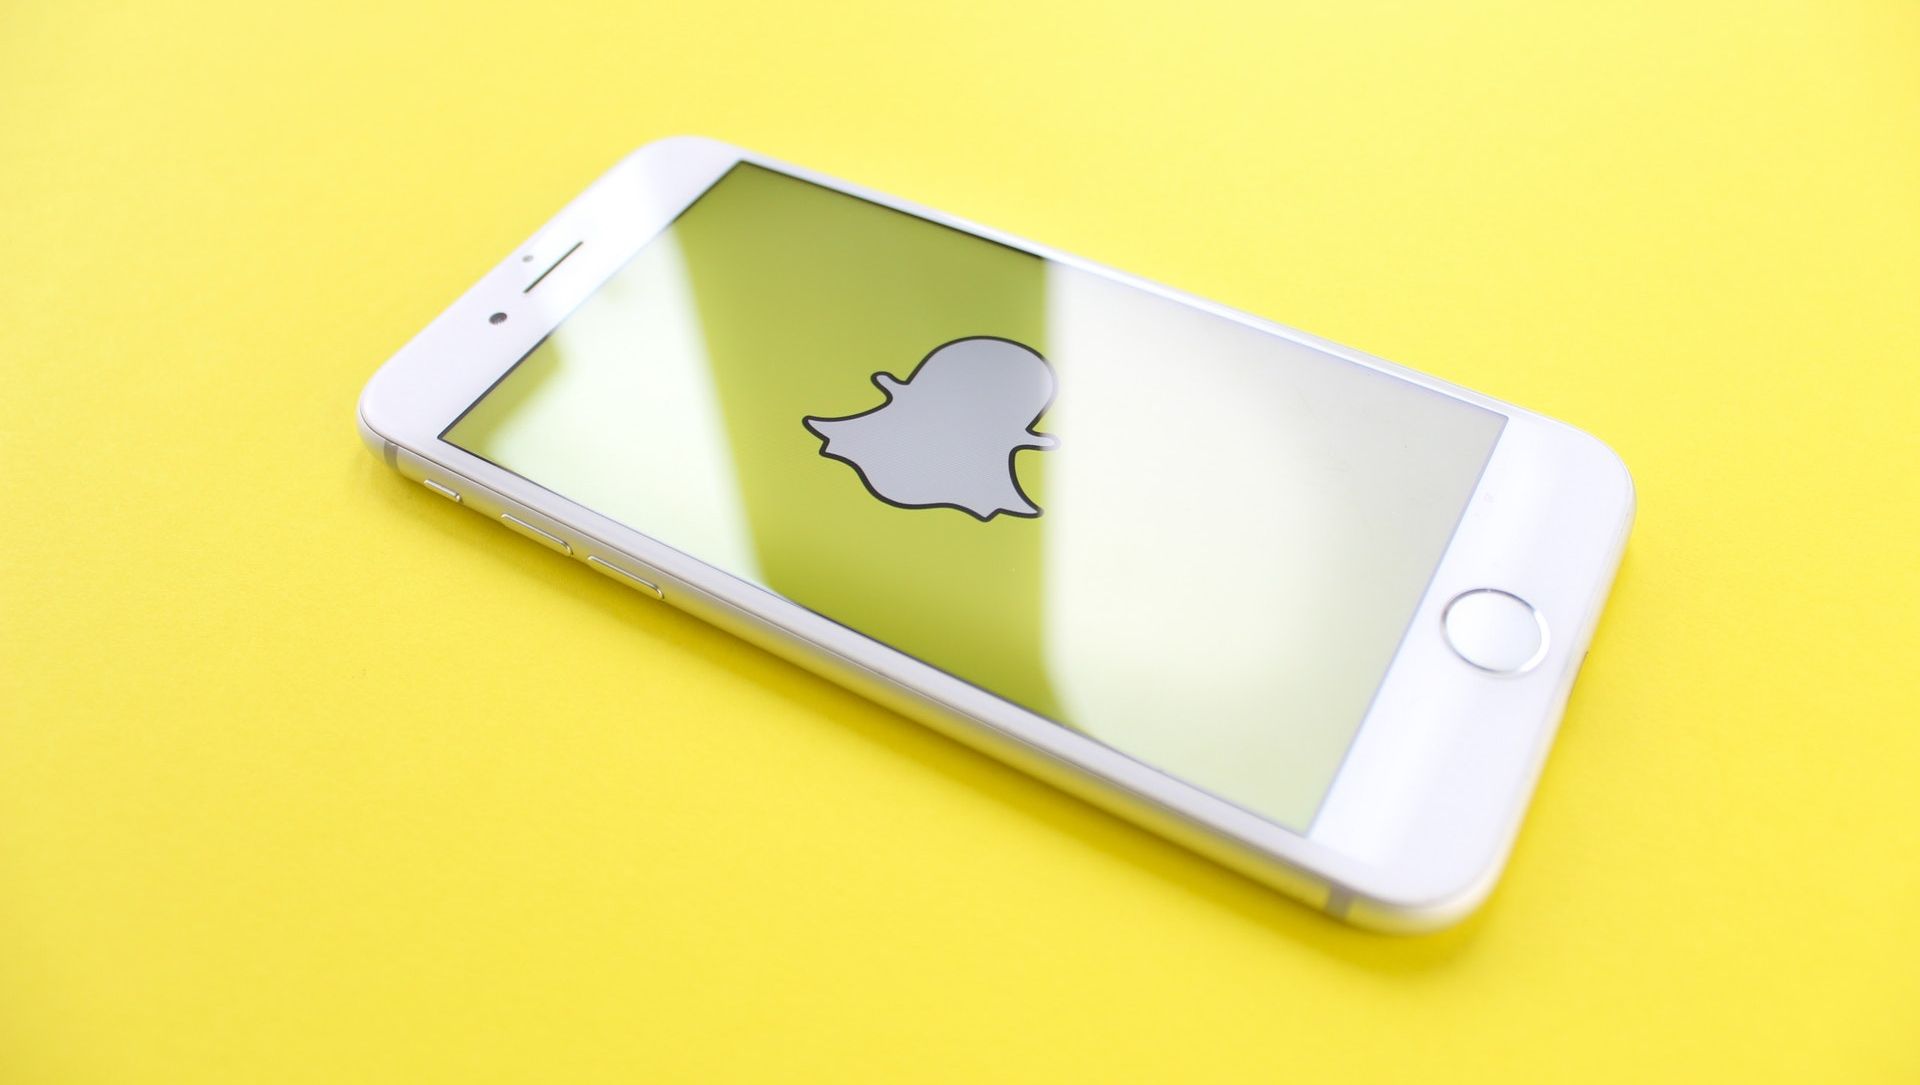 Selg på 10 sekunder med Snapchat